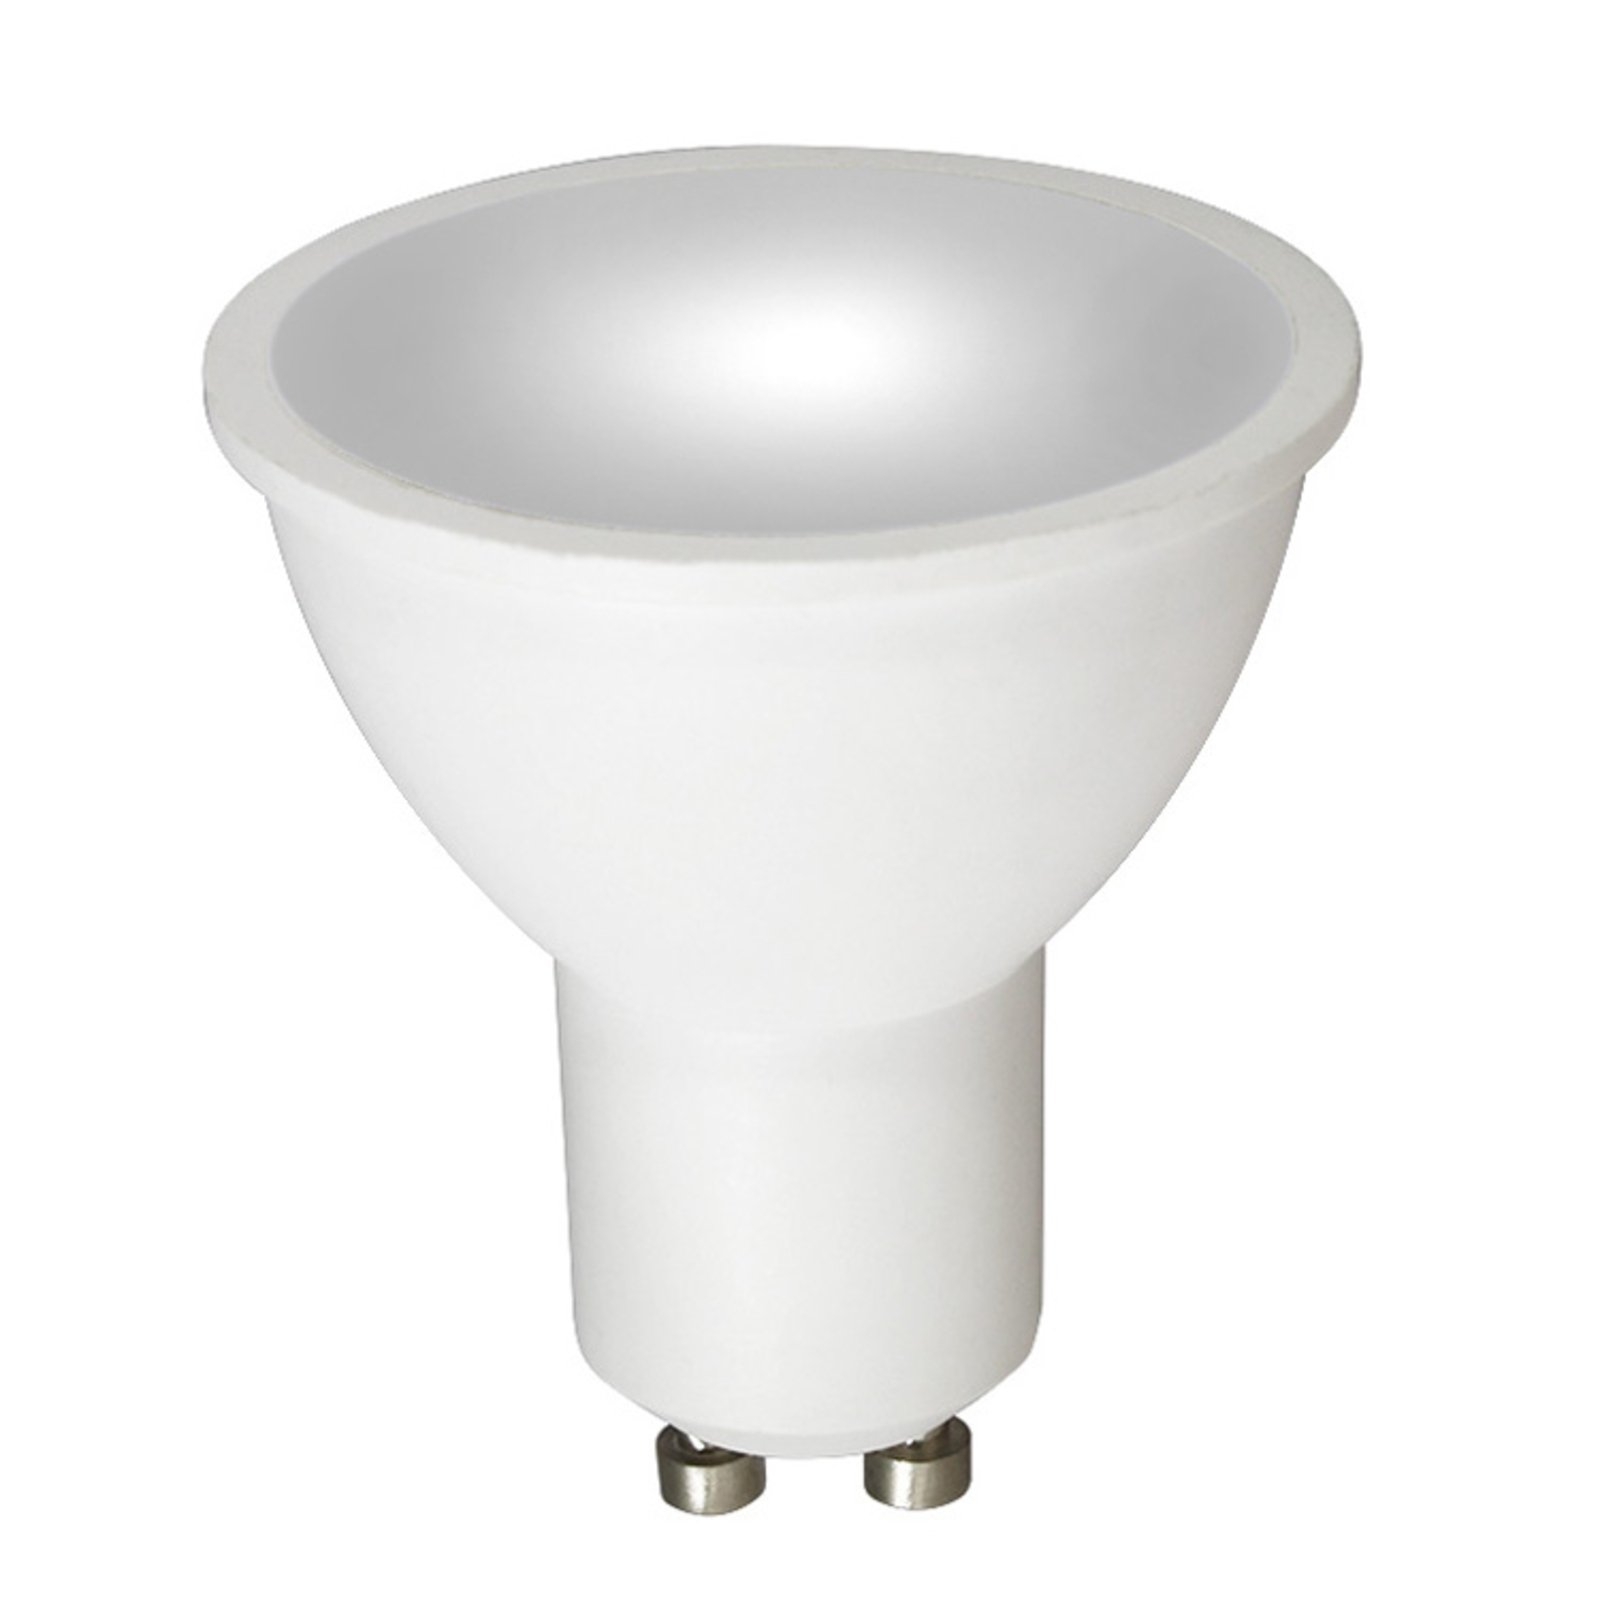 LED bulb reflector KADO GU10, 4,000K, 7.5W, 120°